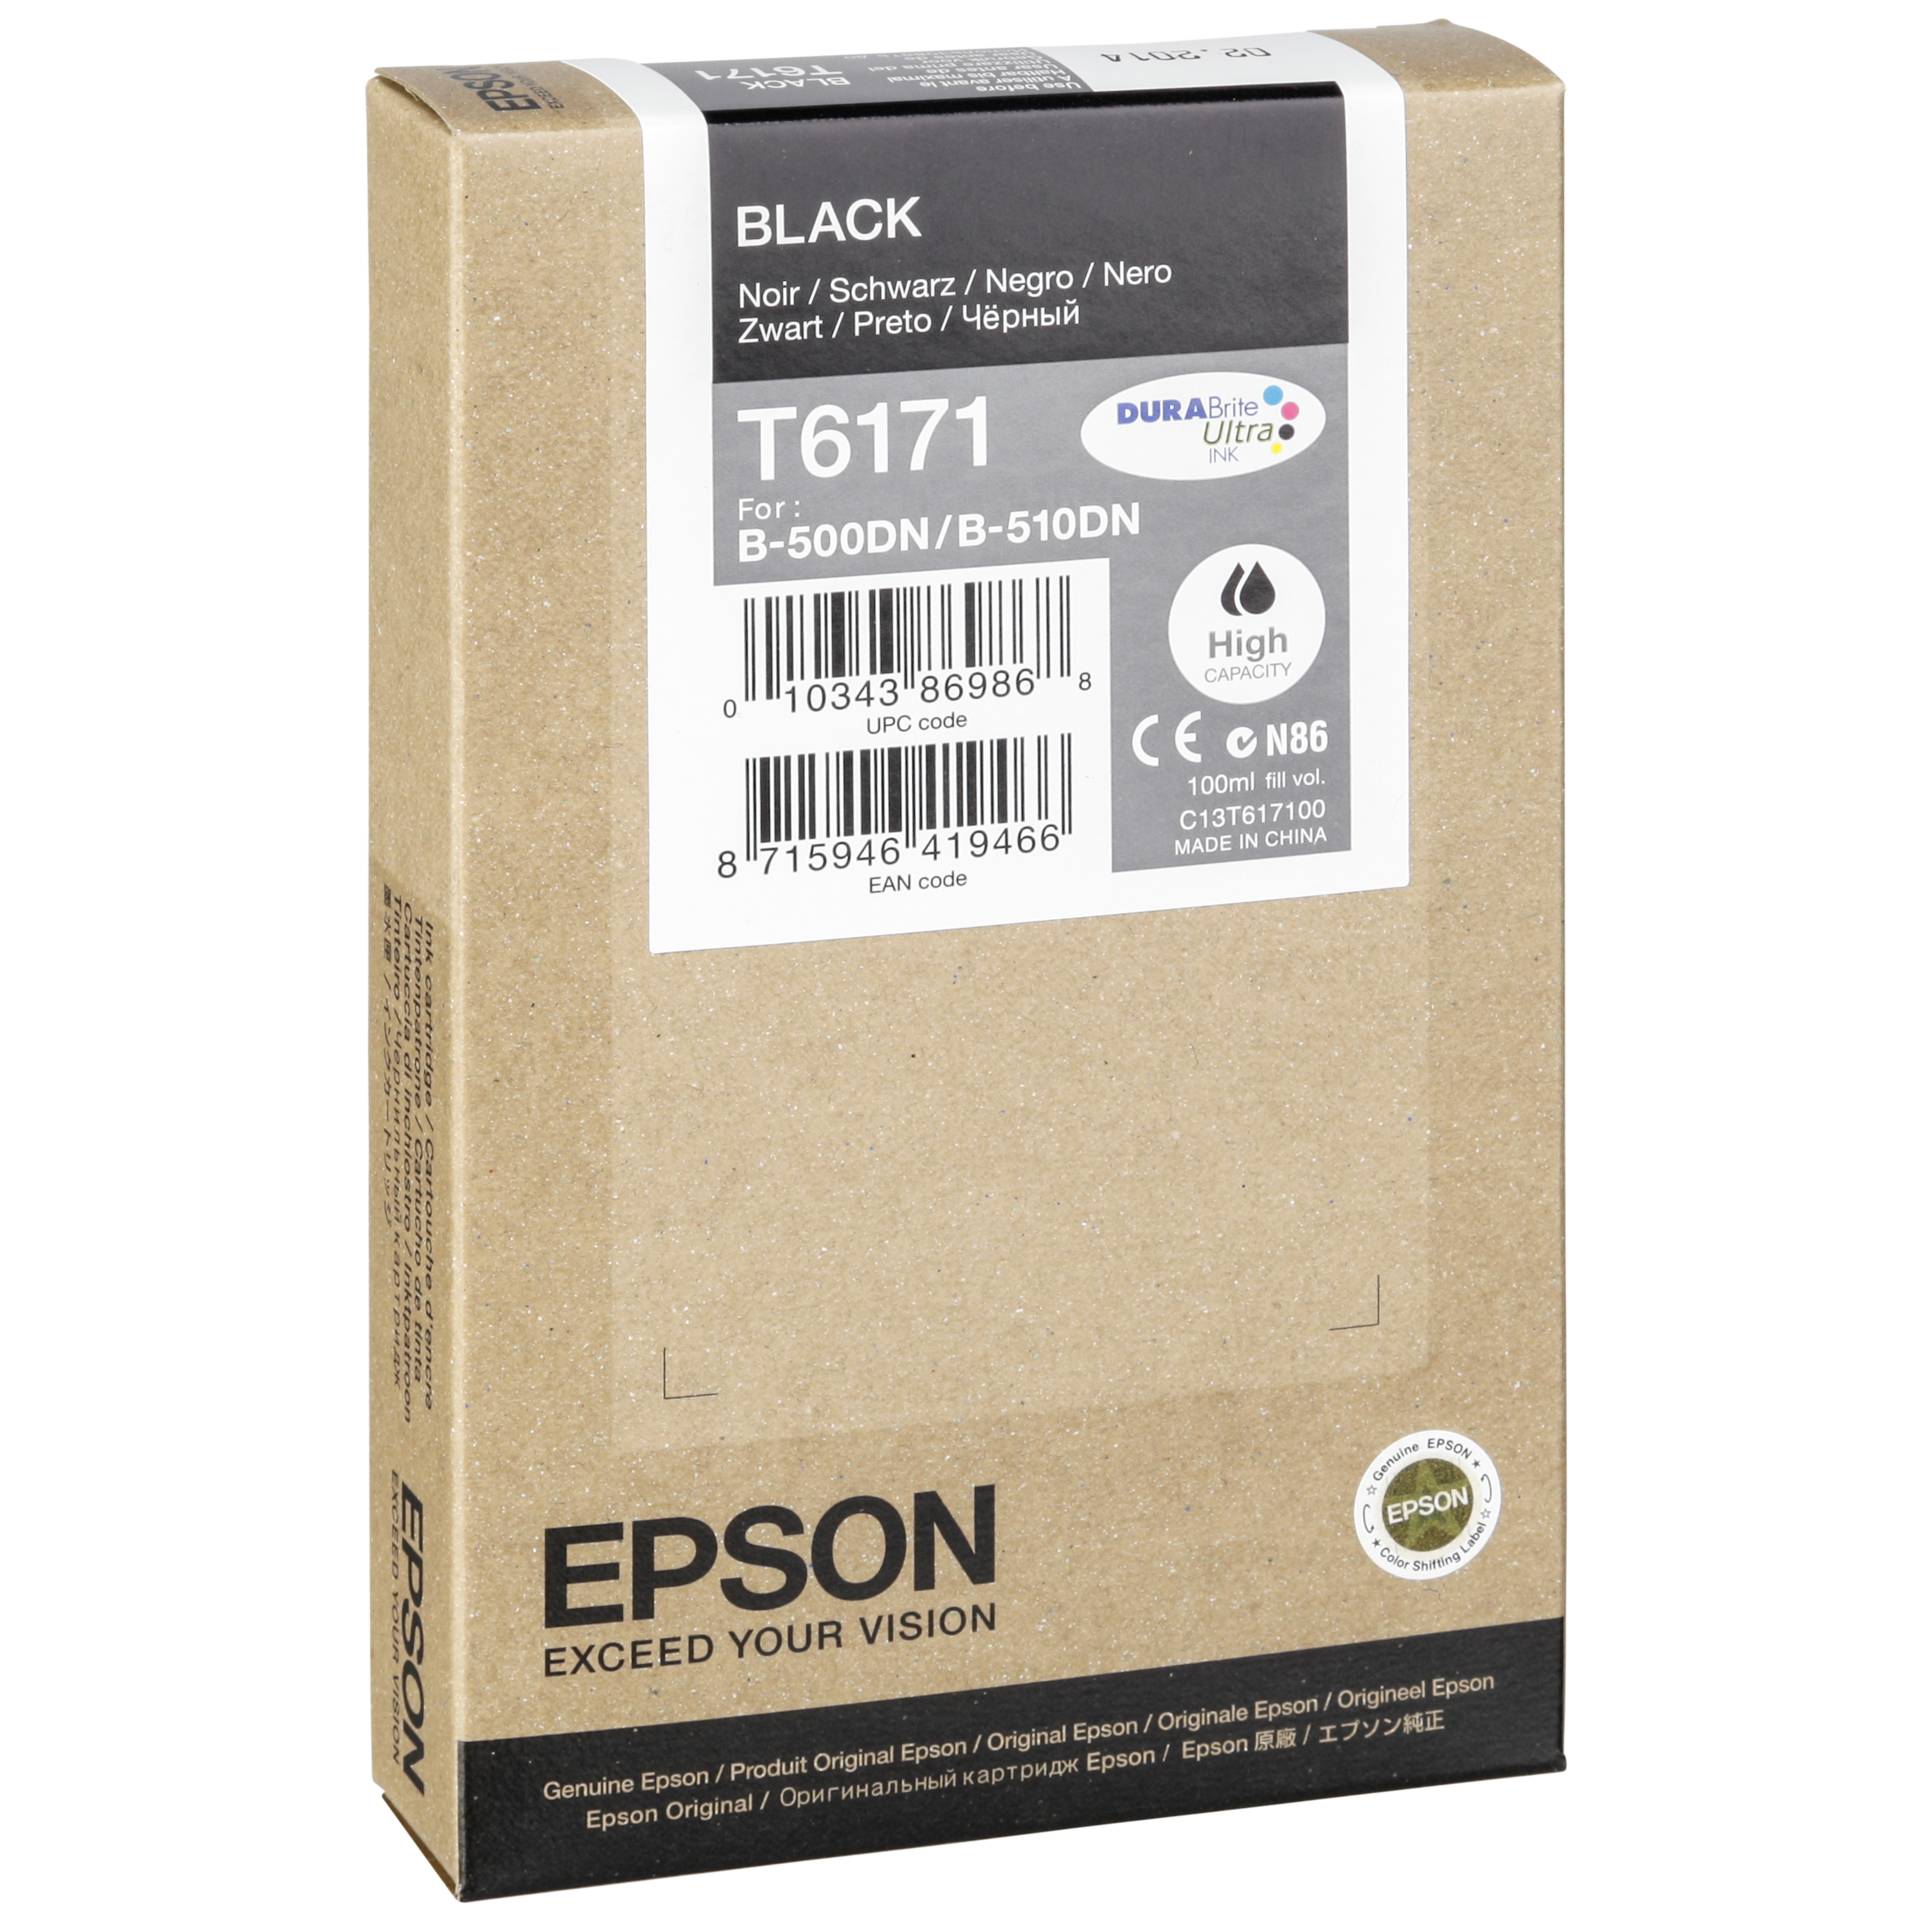 Epson Tinte T6171 schwarz 